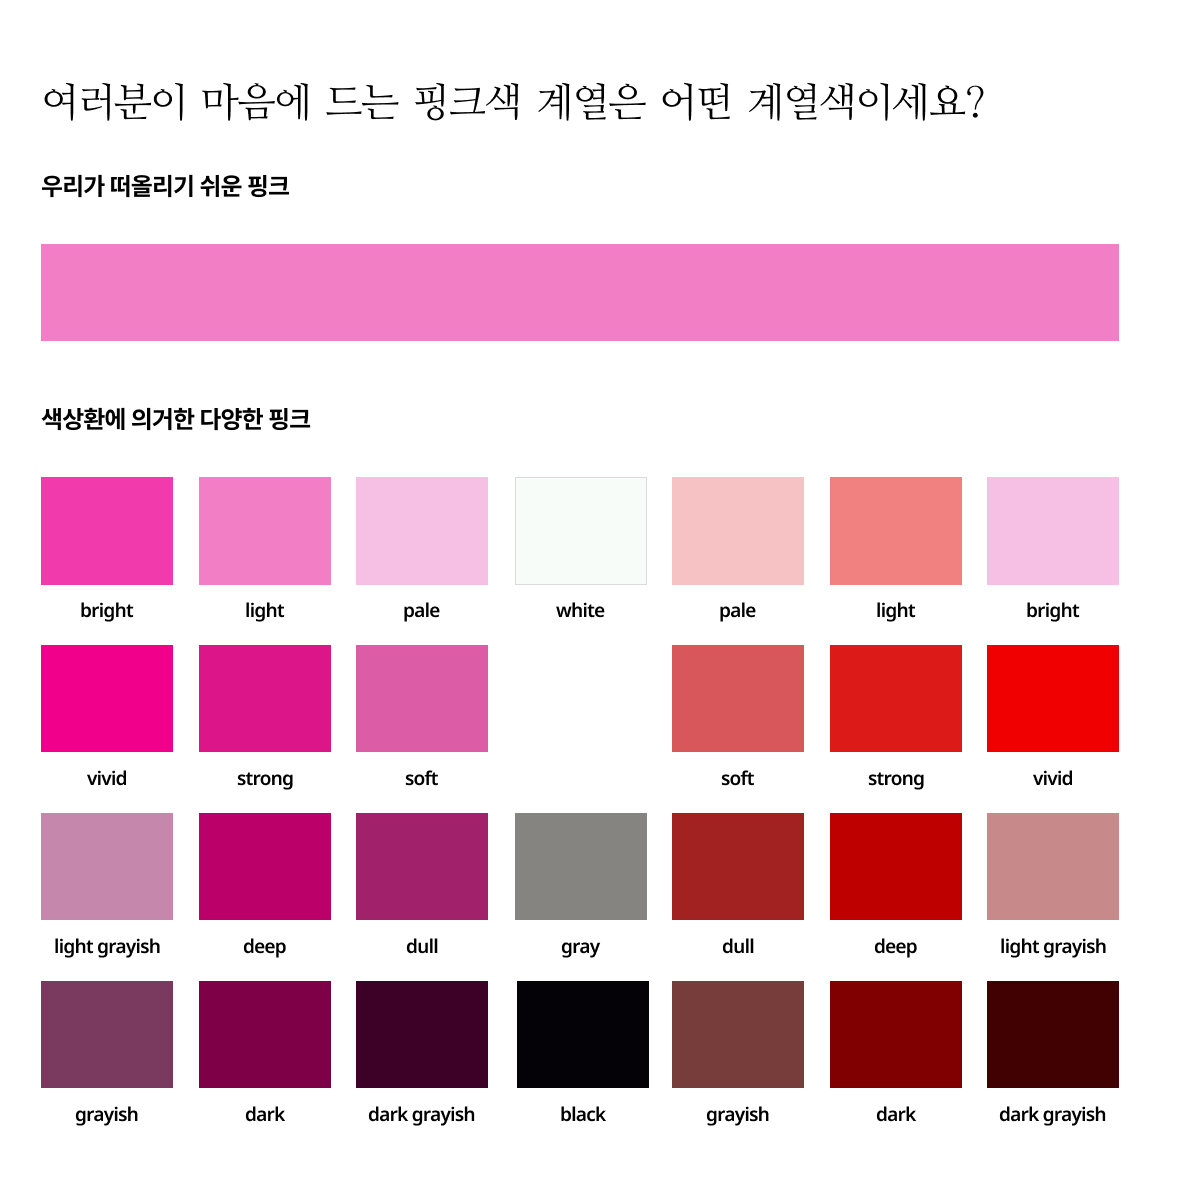 여러분이 마음에 드는 핑크색 계열은 어떤 계열색이세요?